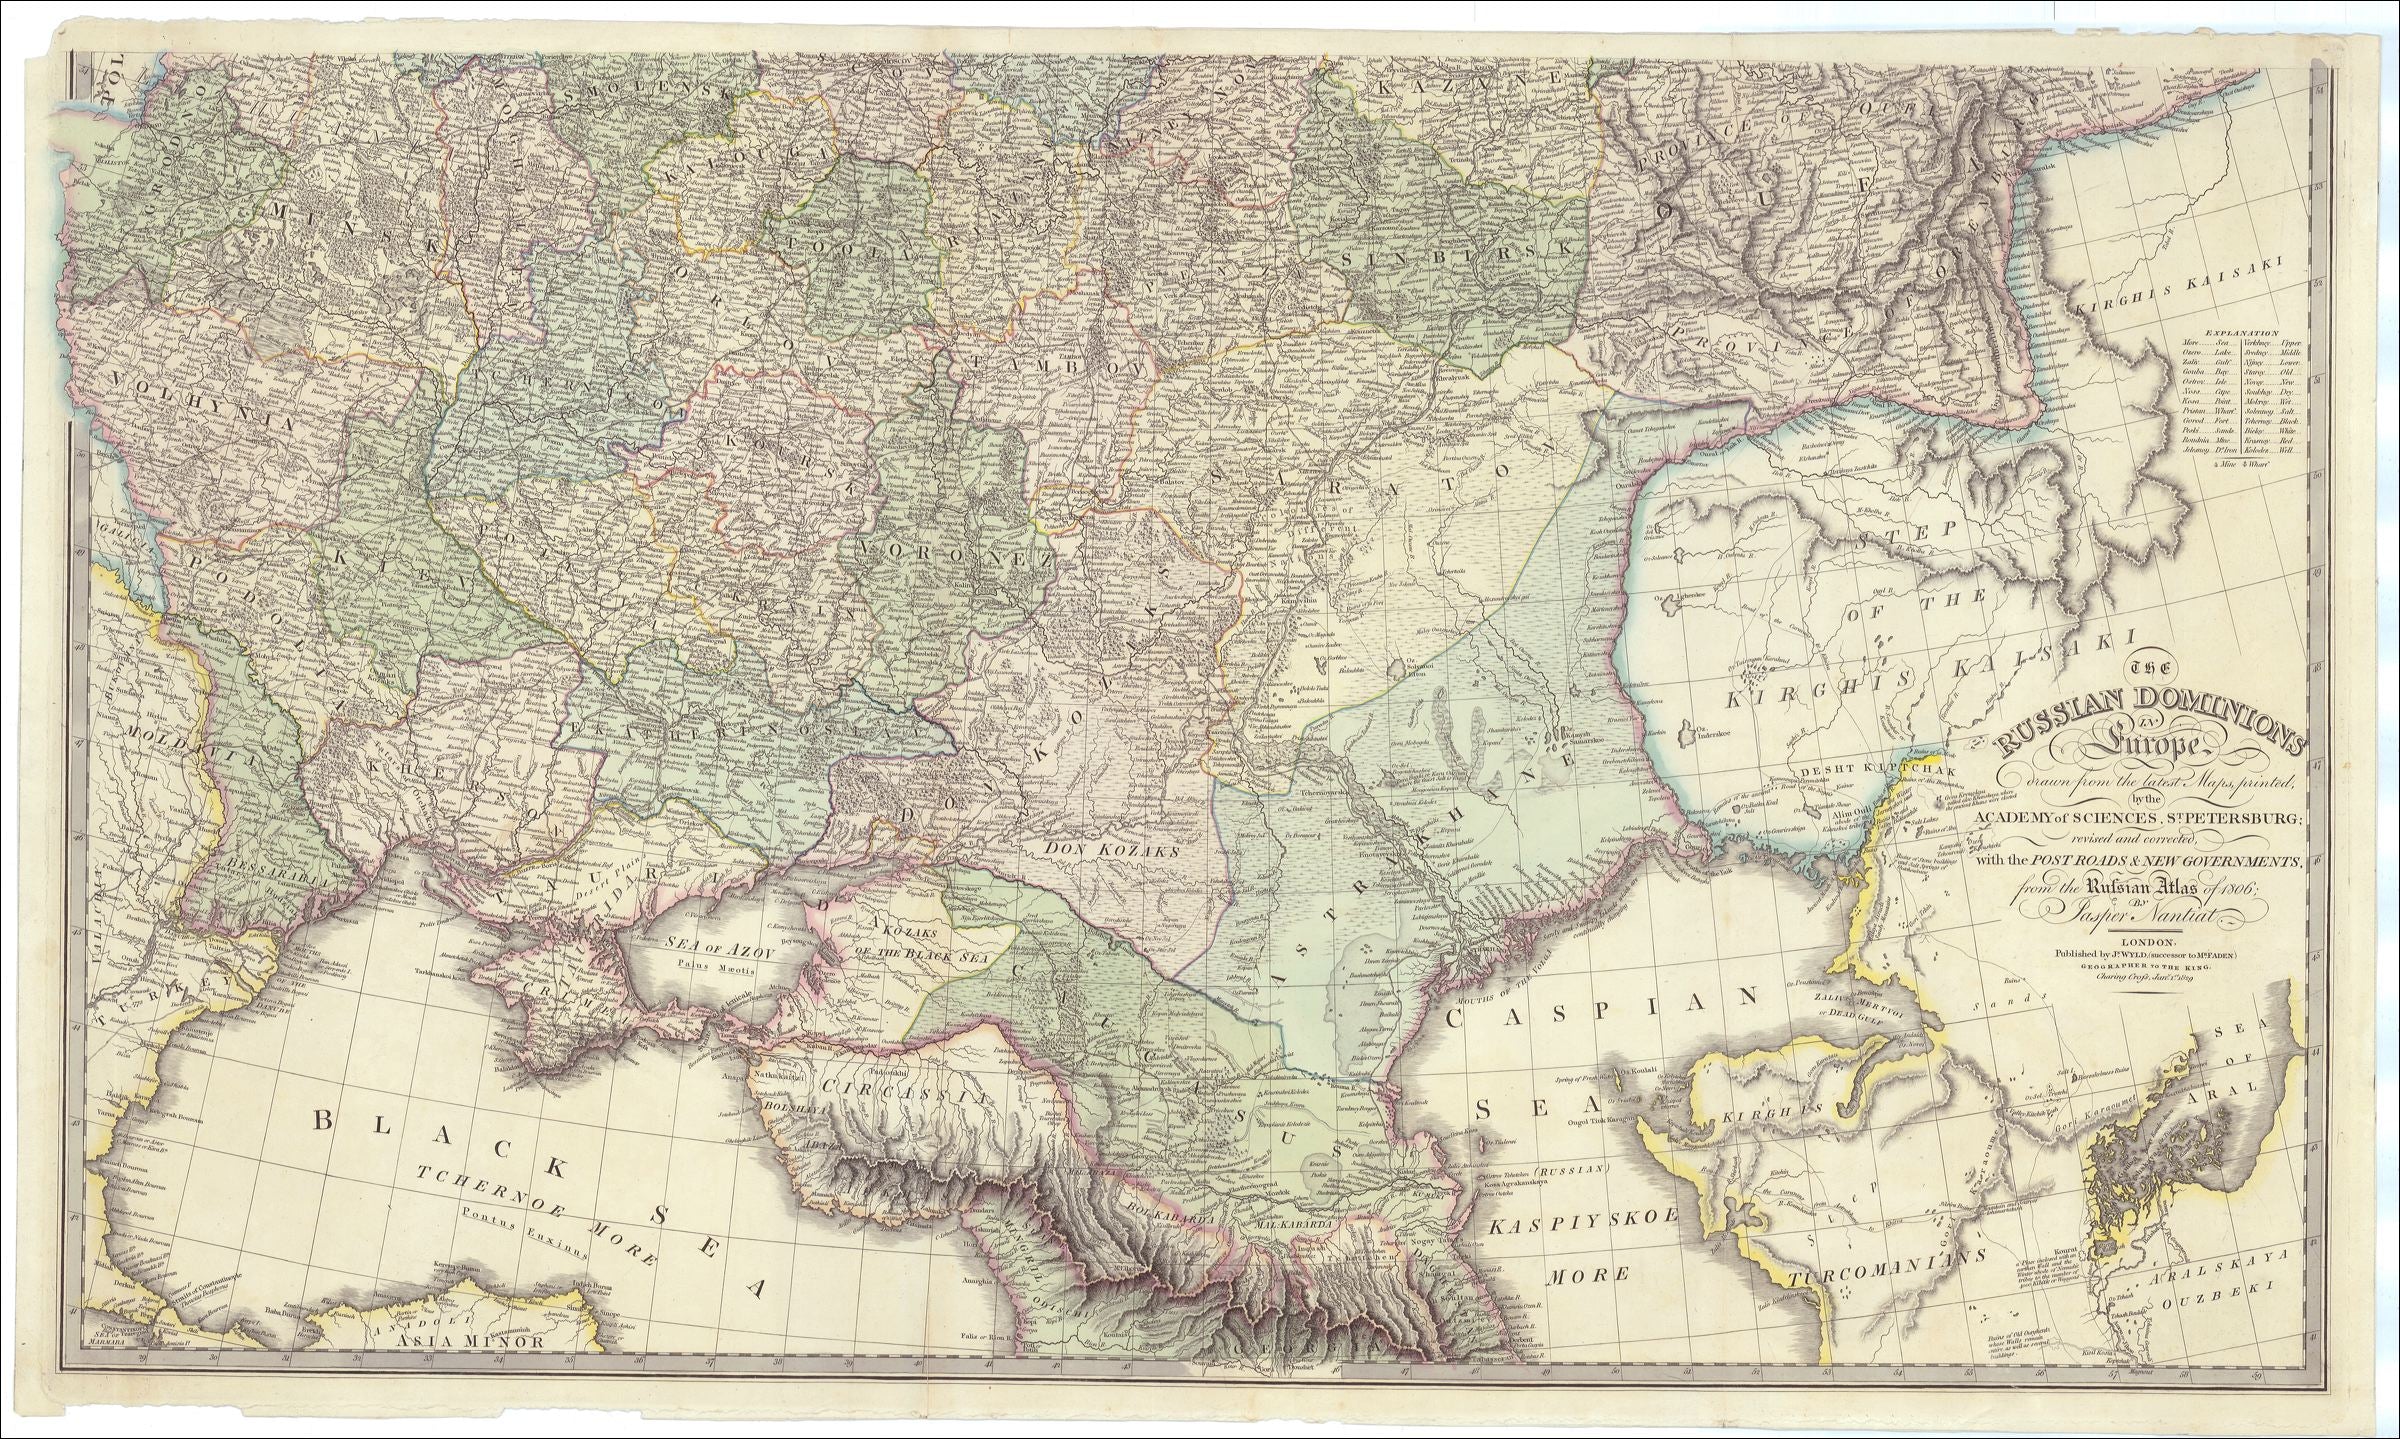 Südrussland aus dem Jahr 1829 von der Academy of Sciences in St. Petersburg